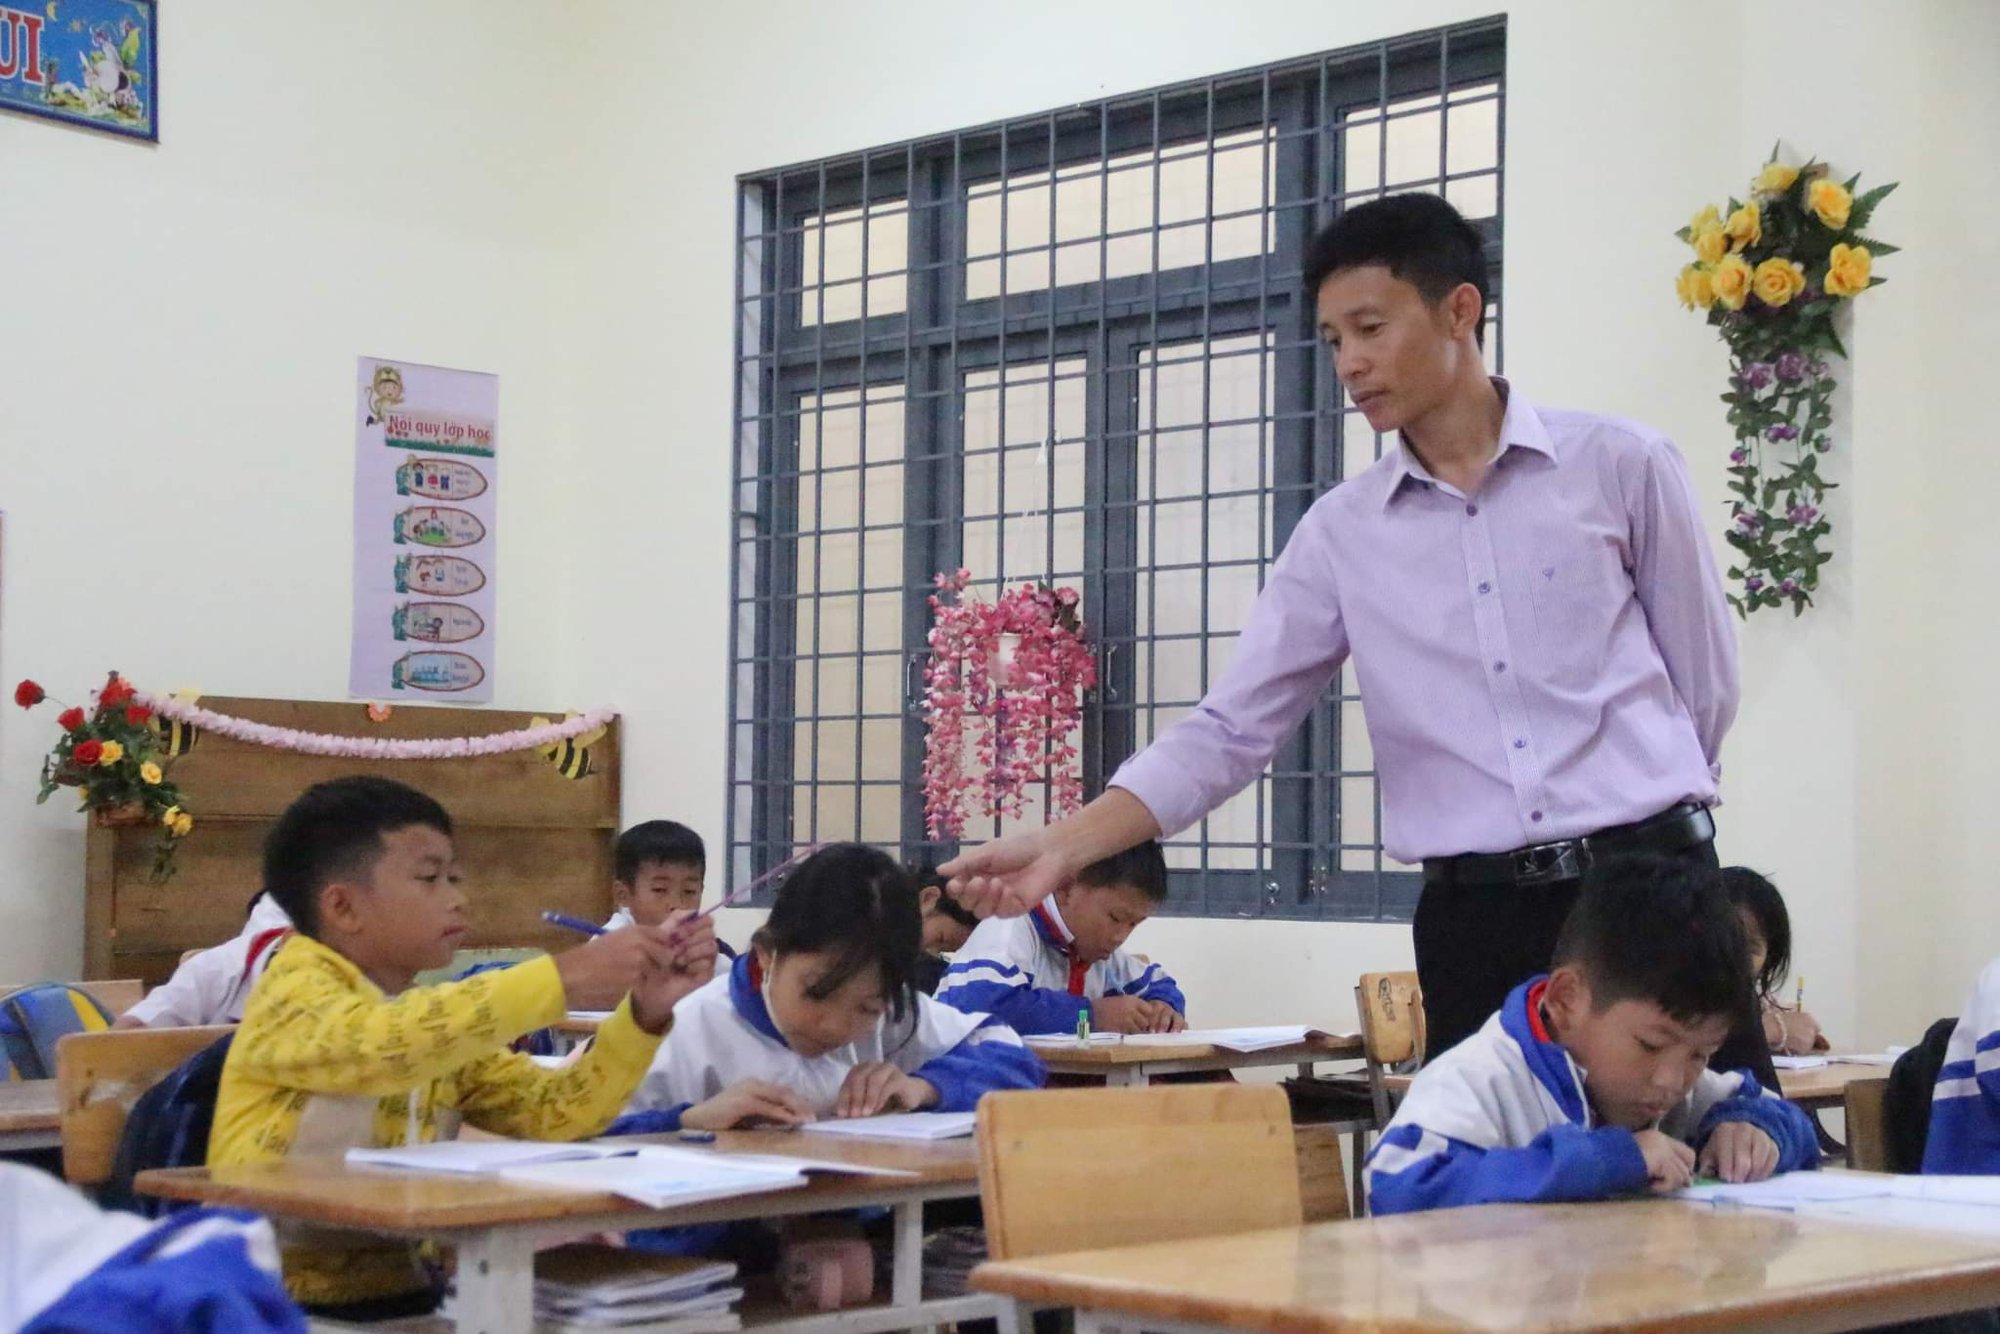 Lo sợ sạt lở, huyện vùng cao ở Kon Tum cho hơn 8.200 học sinh nghỉ học - Ảnh 1.